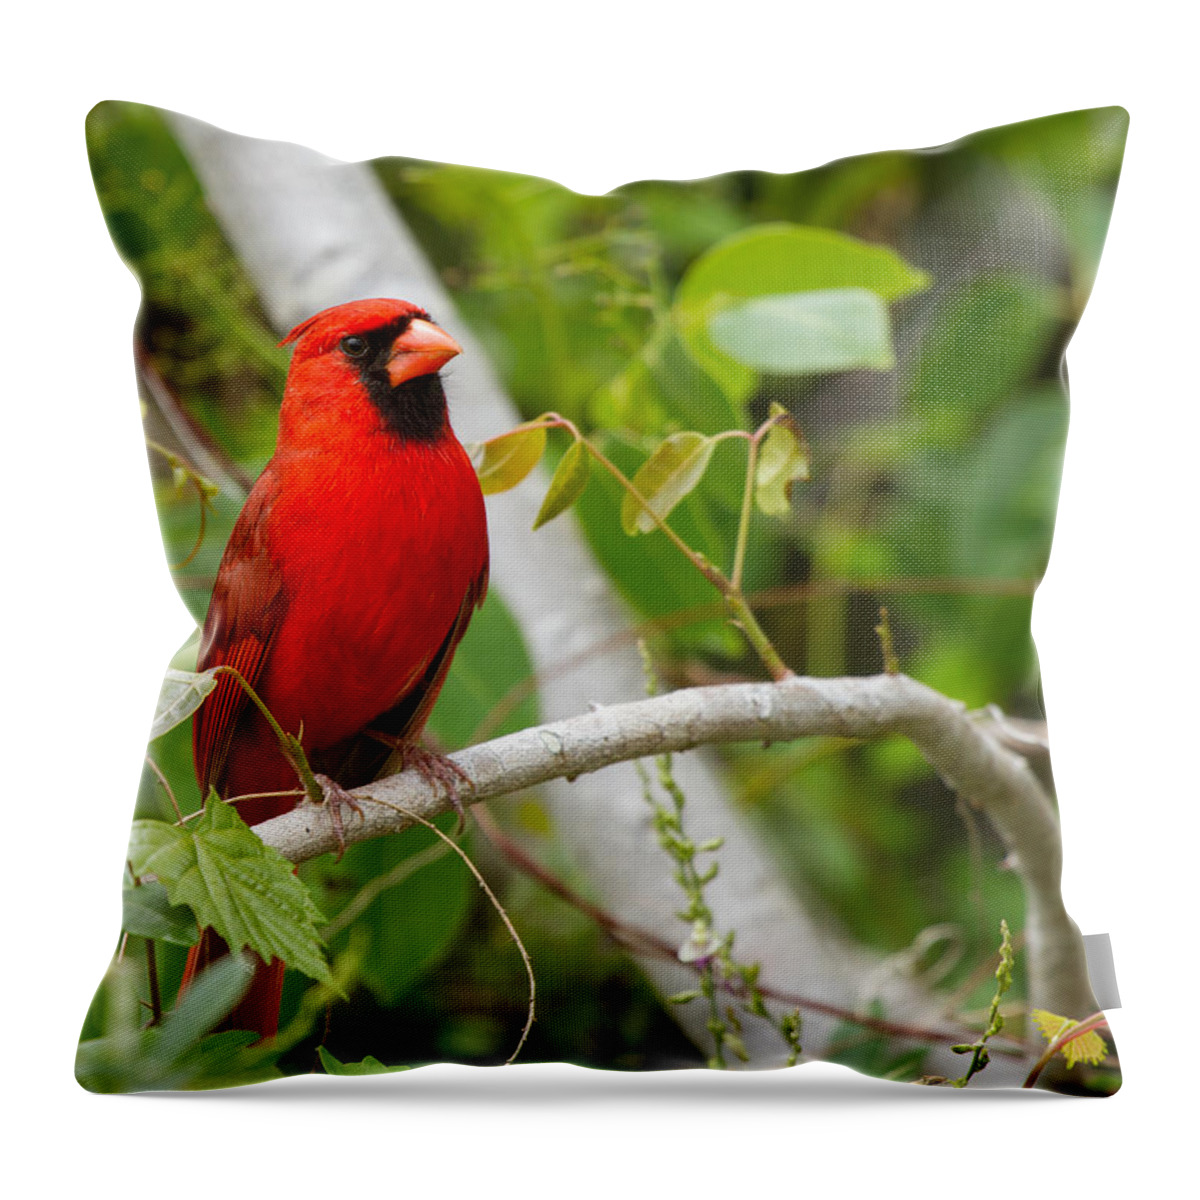 Cardinal Throw Pillow featuring the photograph Cardinal 147 by Michael Fryd